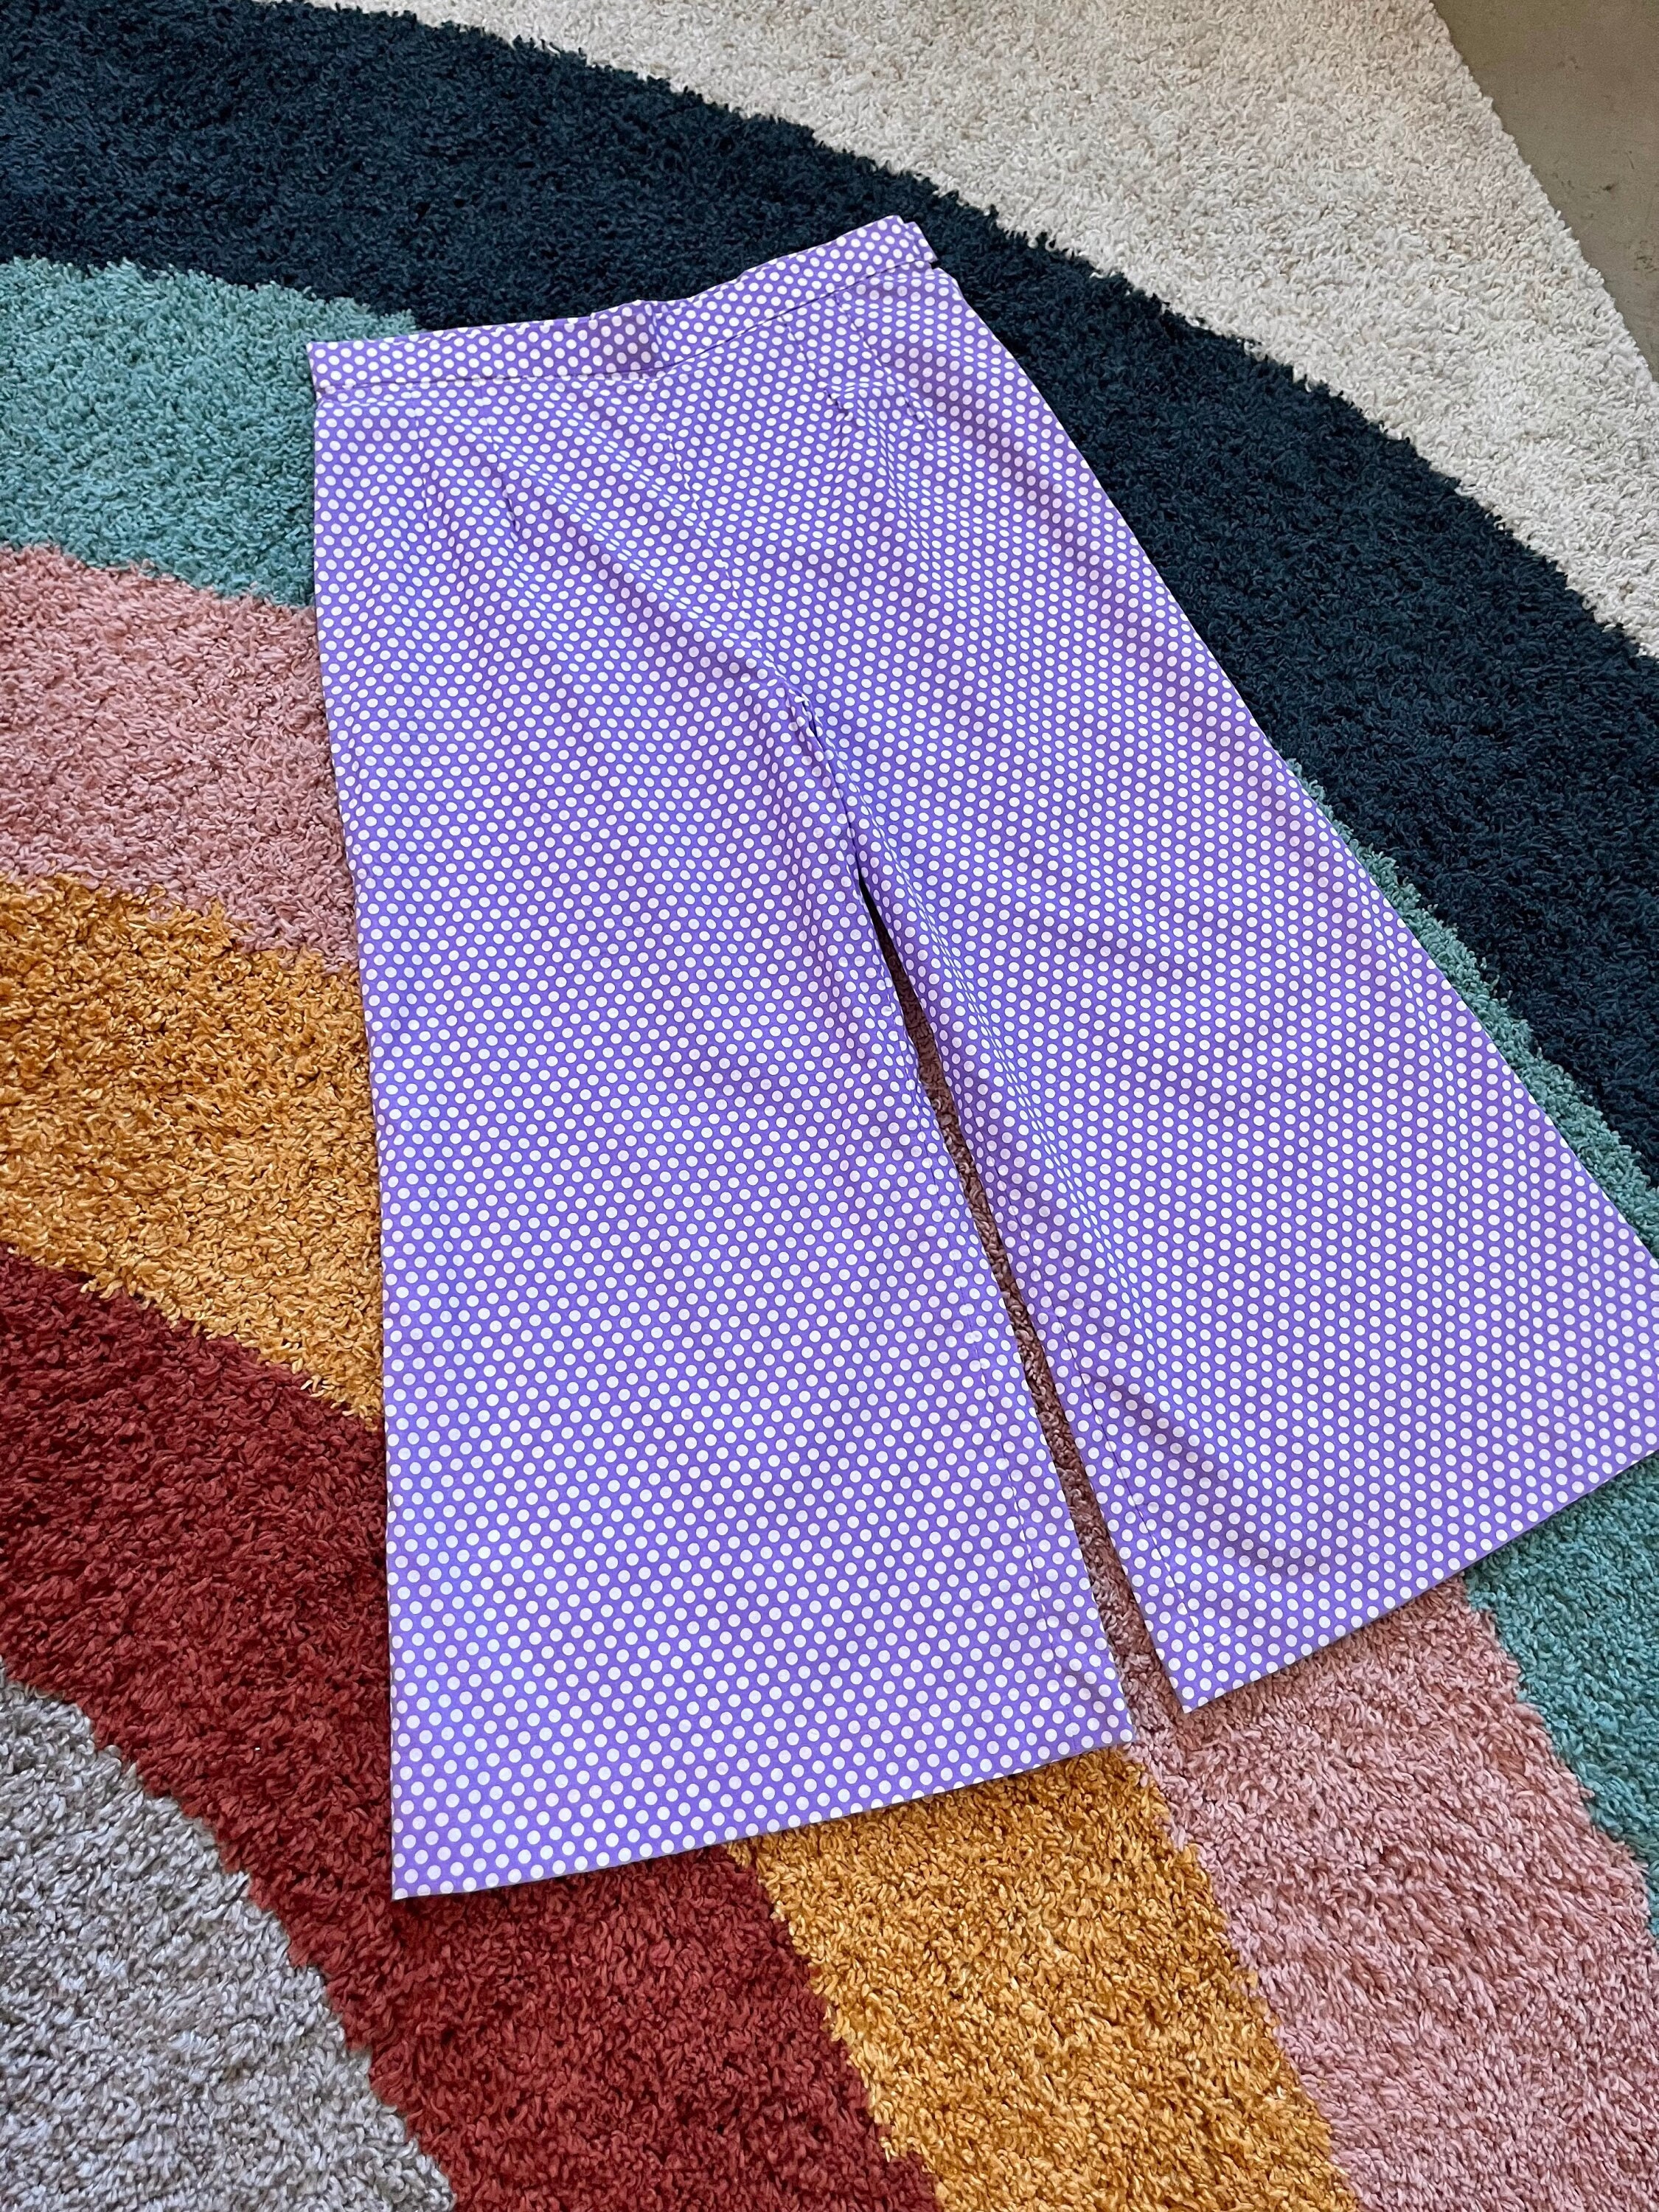 Women's Extra Tall Pajama Pants Extra Long Pj Pants Lilac Pjs